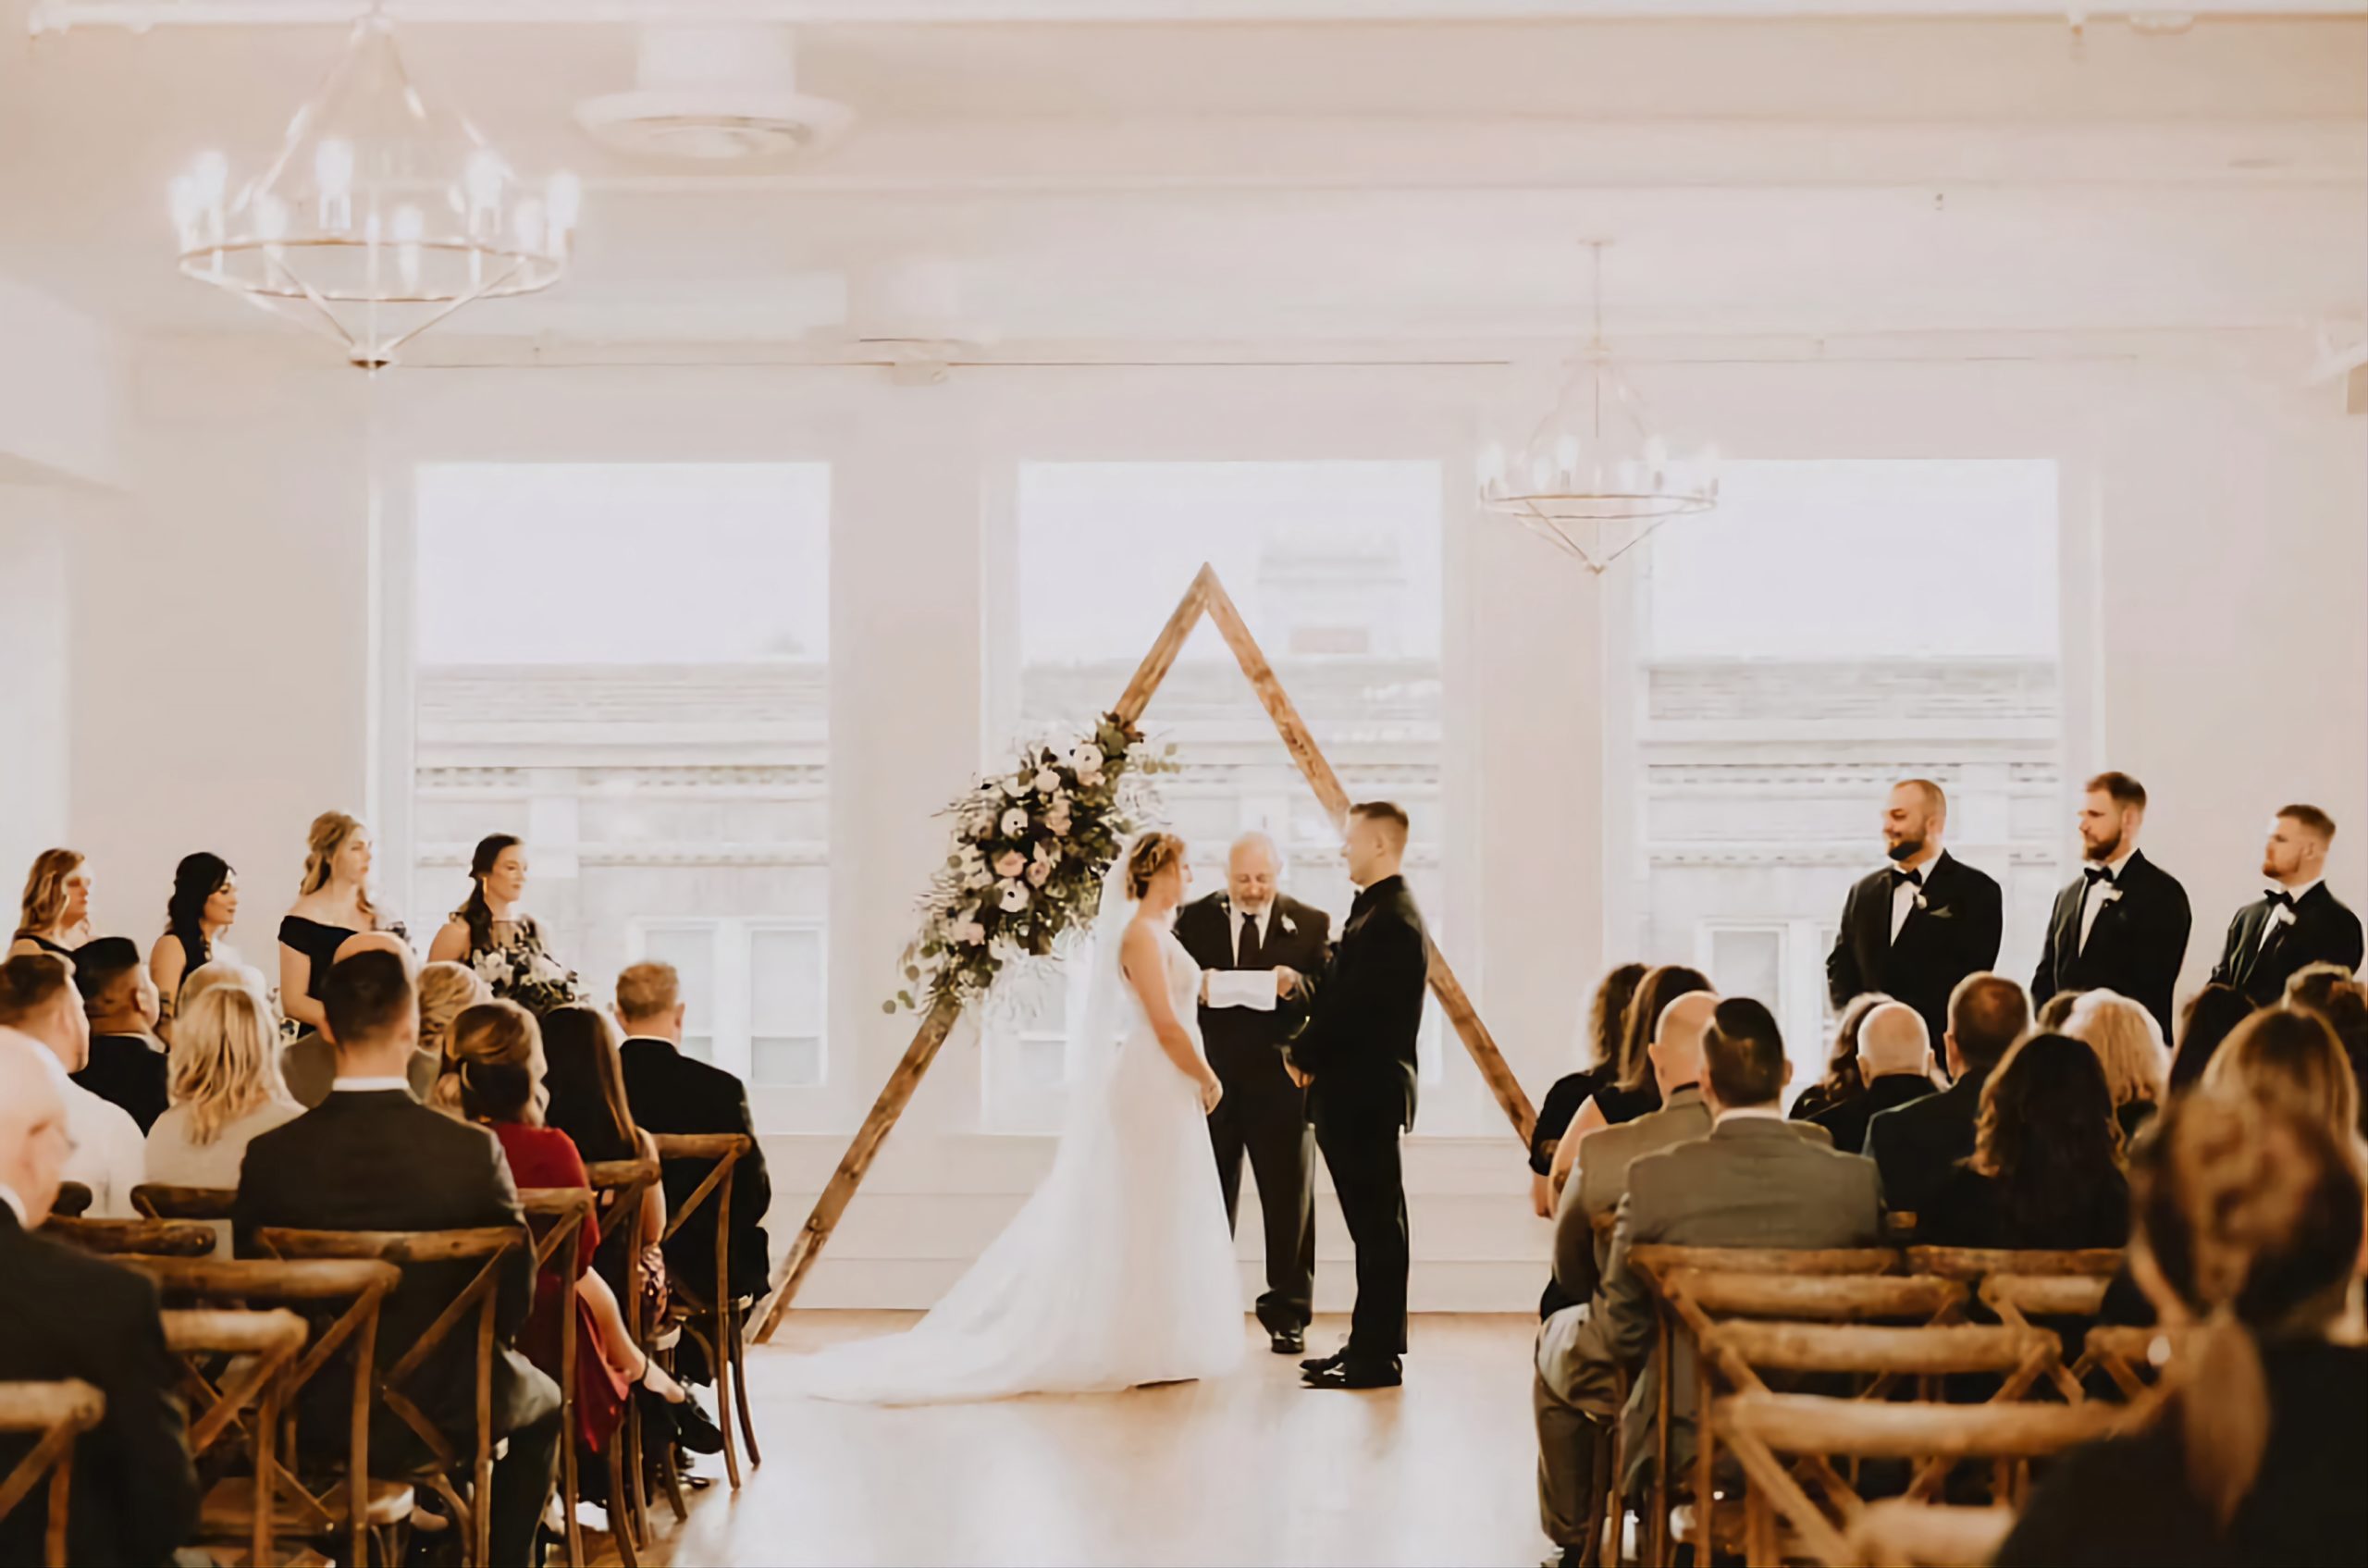 Top 7 Wedding Venues in Kenosha, Wisconsin